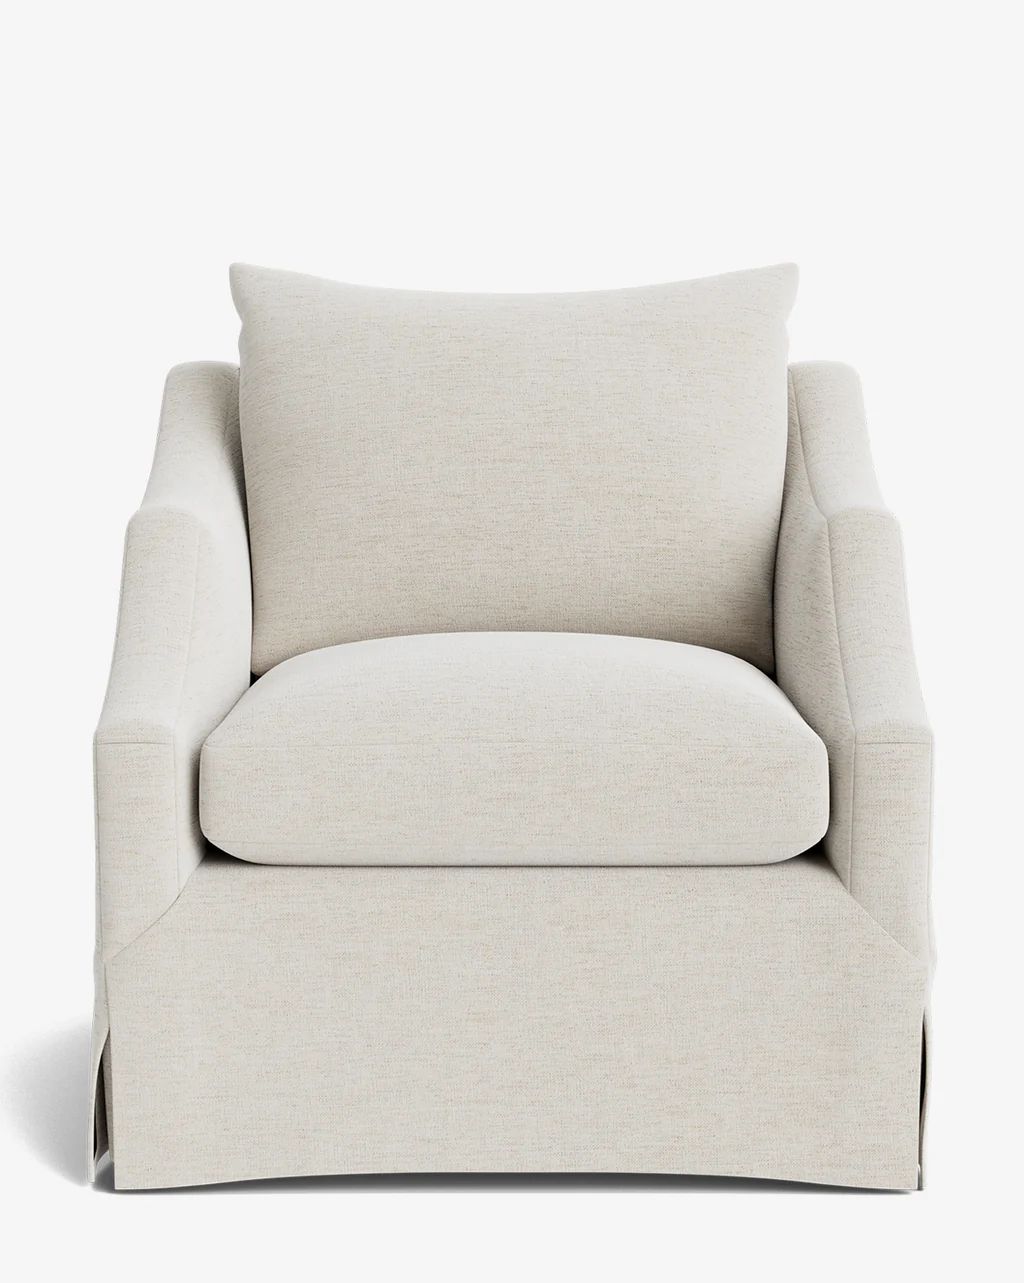 Everleigh Chair | McGee & Co.